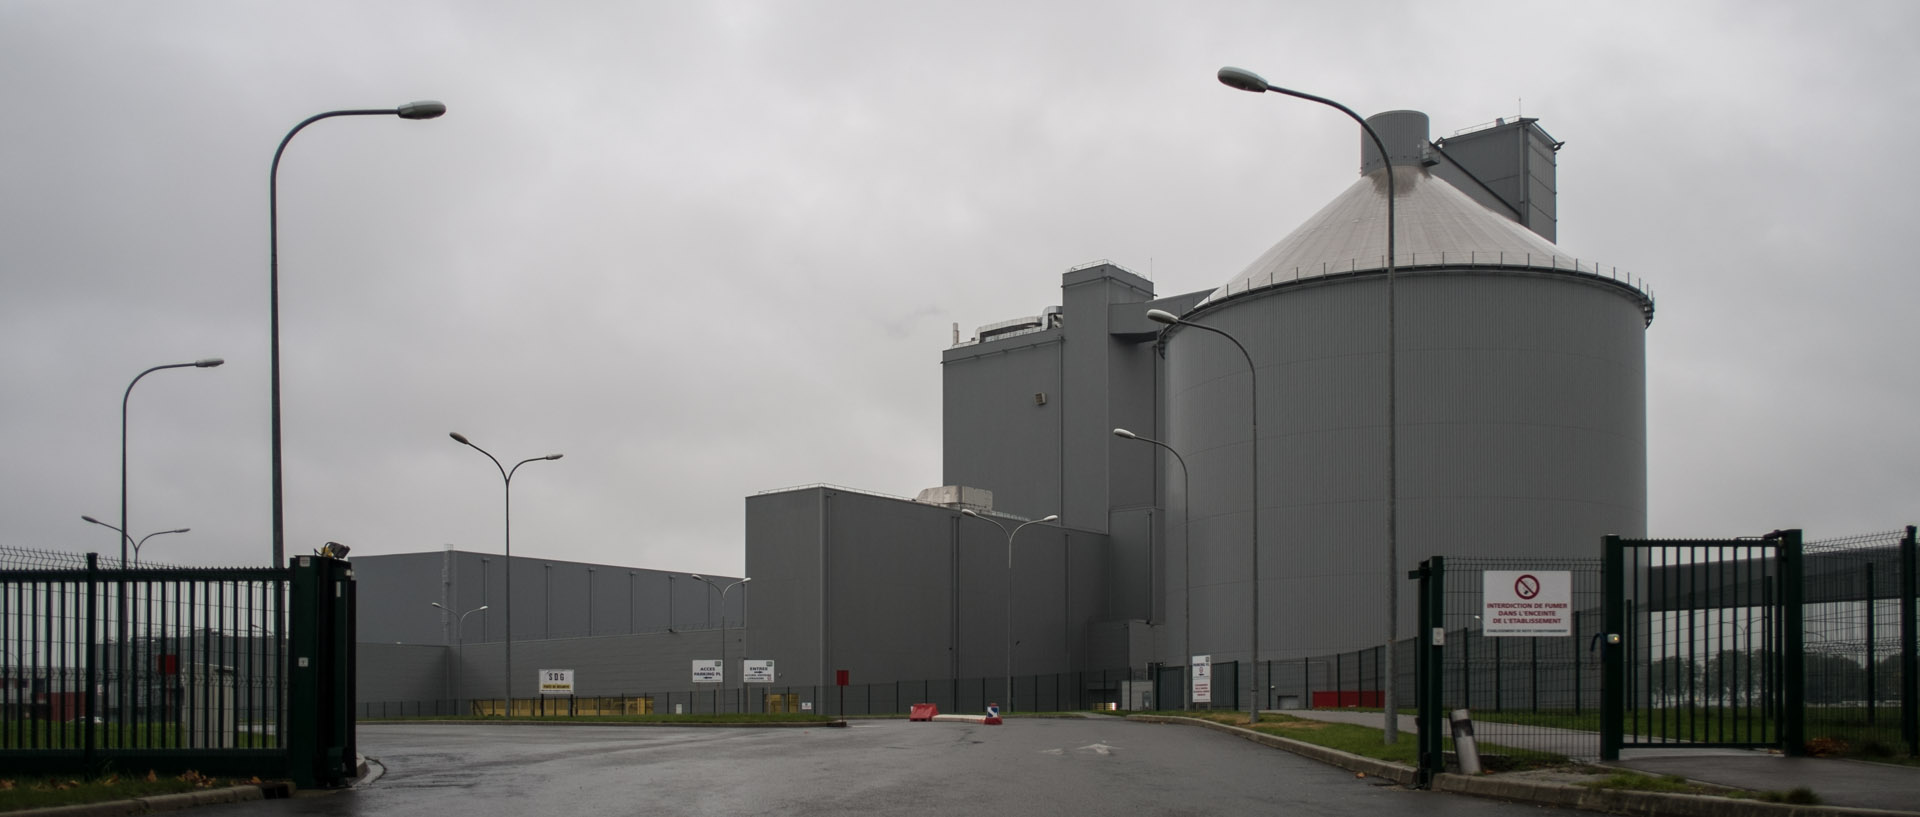 Vendredi 1er novembre 2013, 7:55, usine de sucre Saint-Louis, Roye